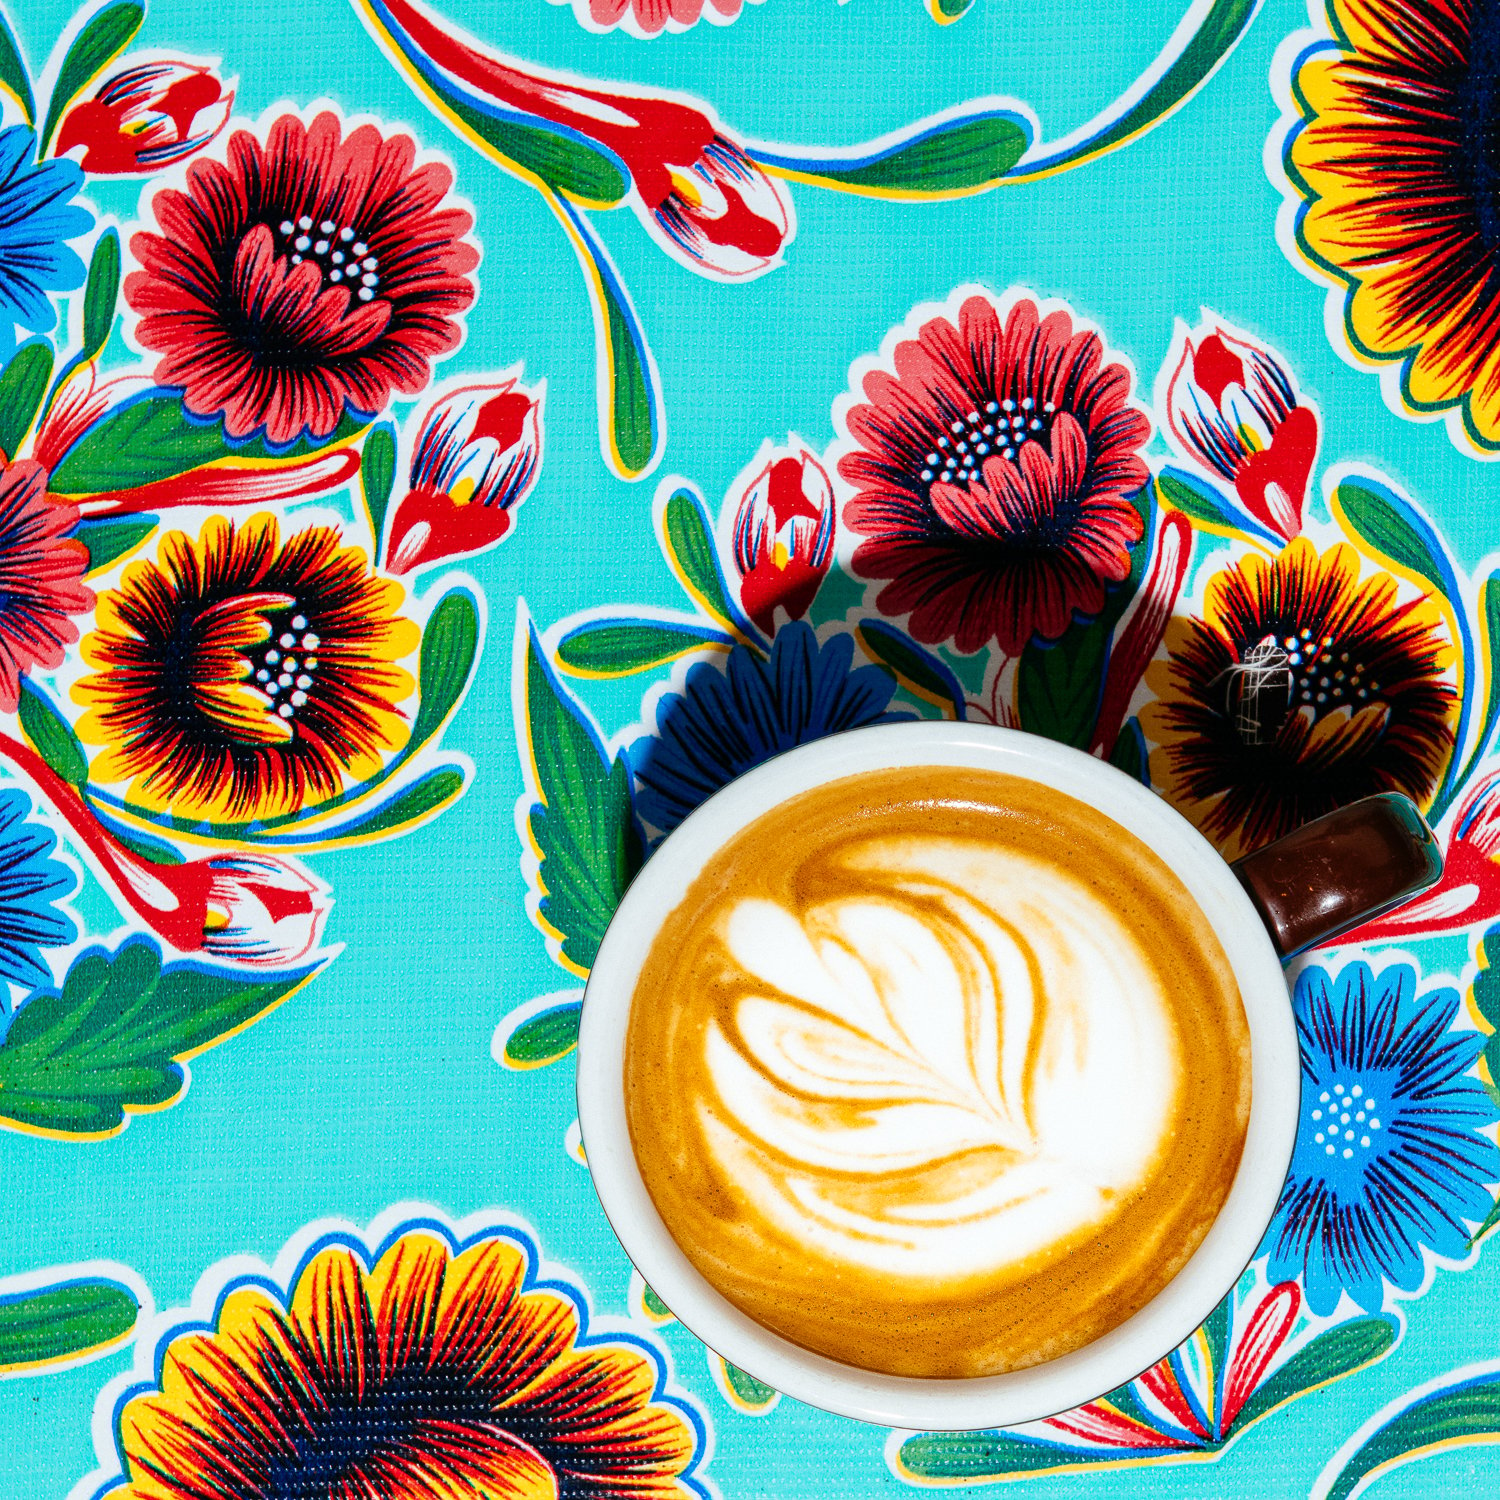 Lauren V. Allen's after shot of Yadira's meticulous latte art